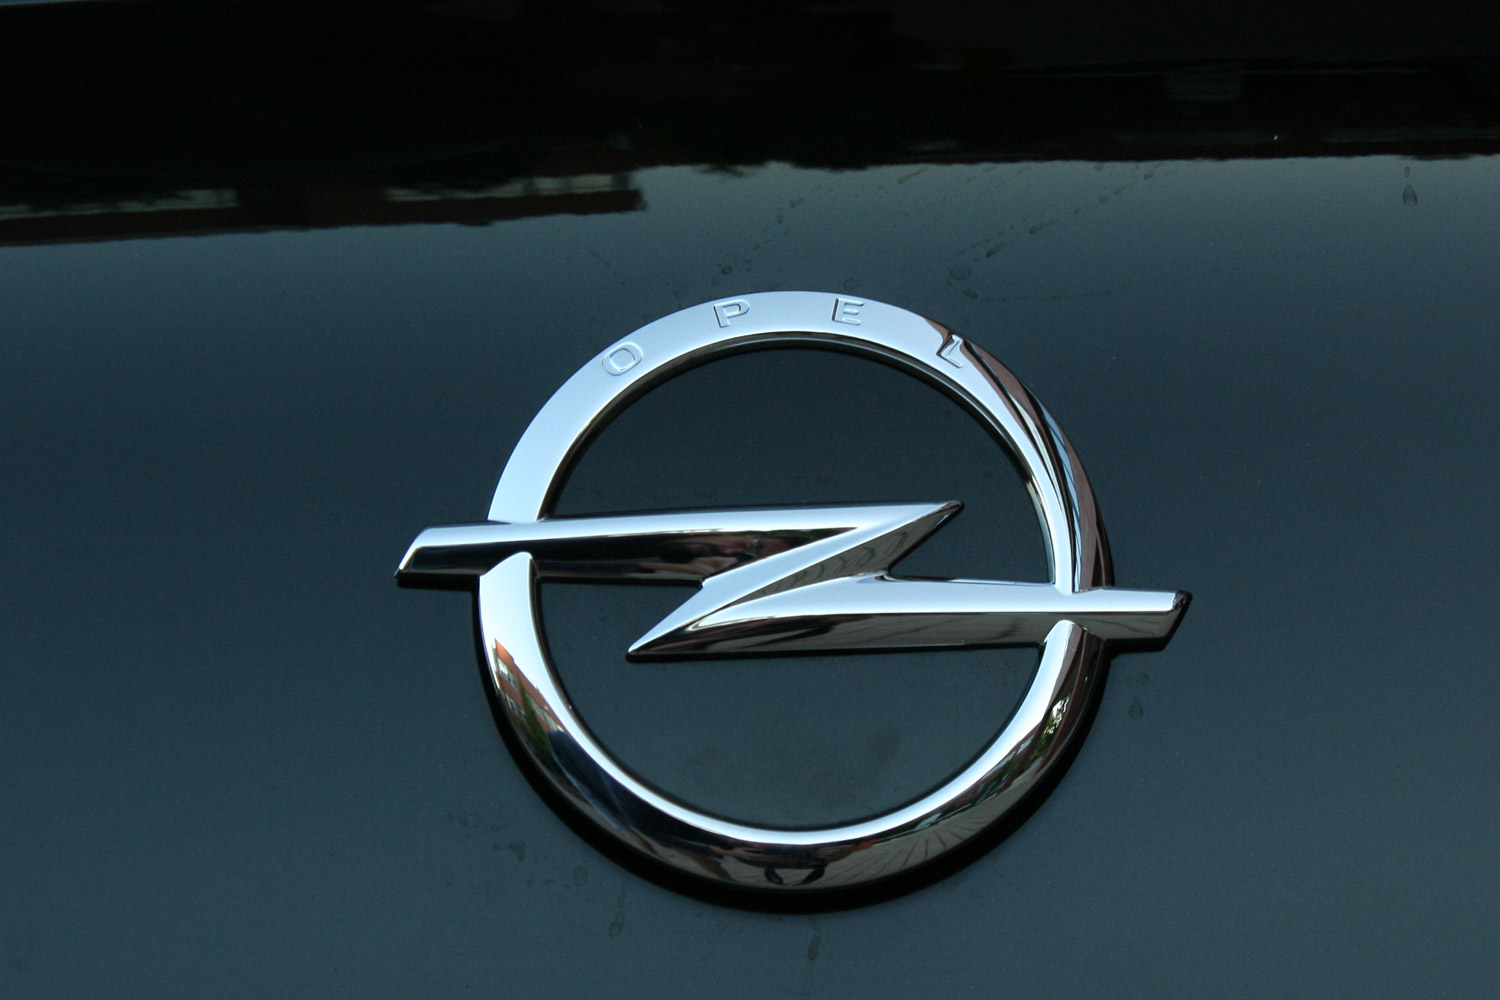 Itthon teszteltük, mit ér az Opel csúcsmodellje 25